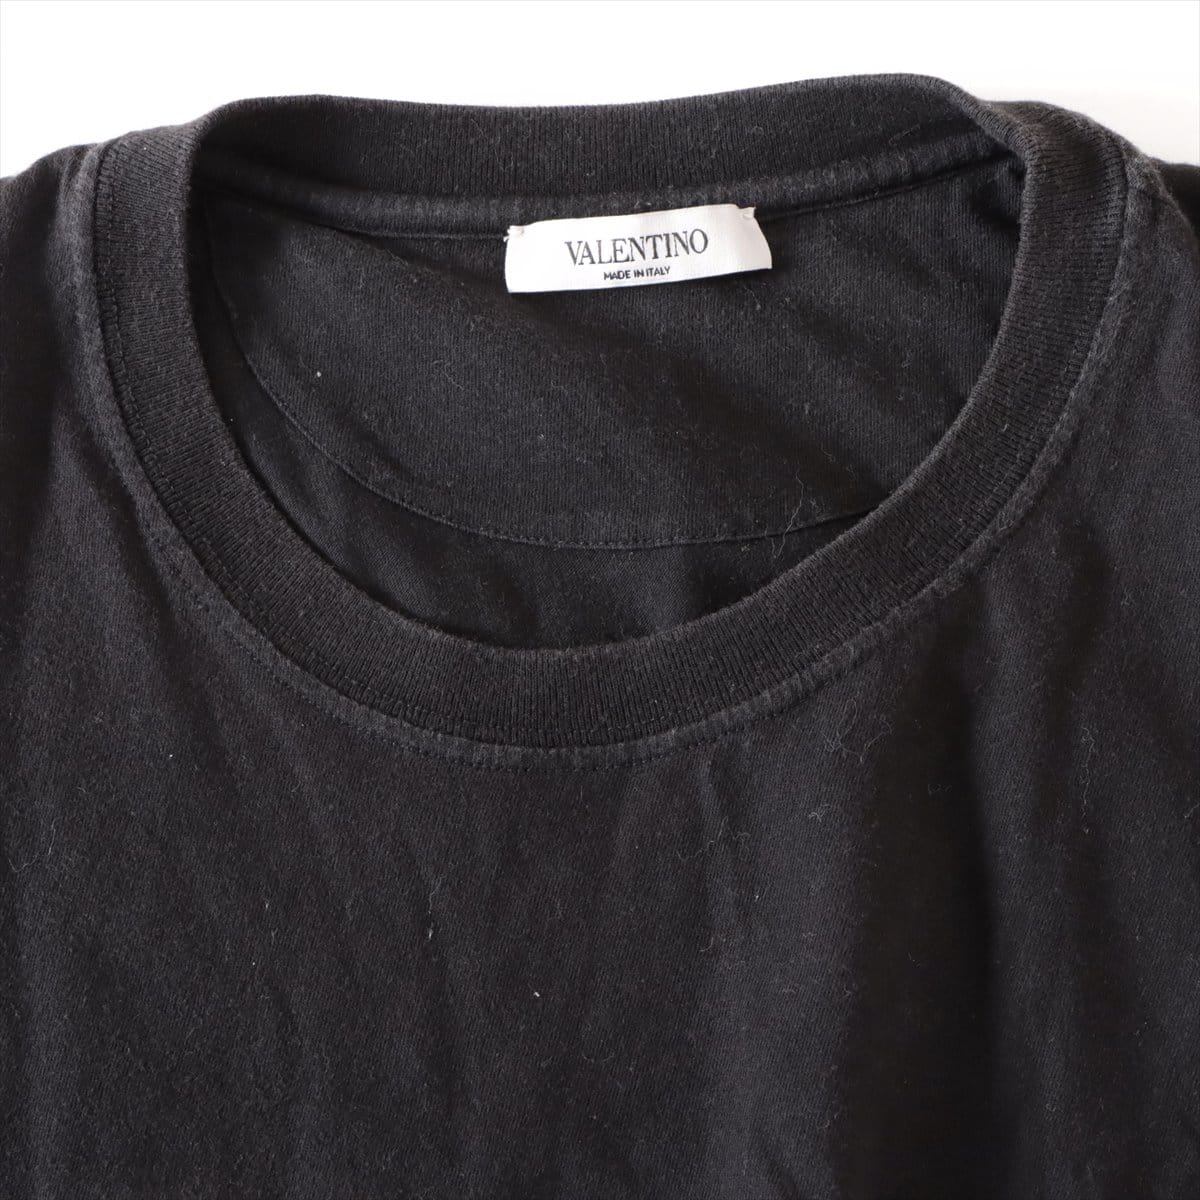 ヴァレンティノ コットン Tシャツ L メンズ ブラック  2099プリント